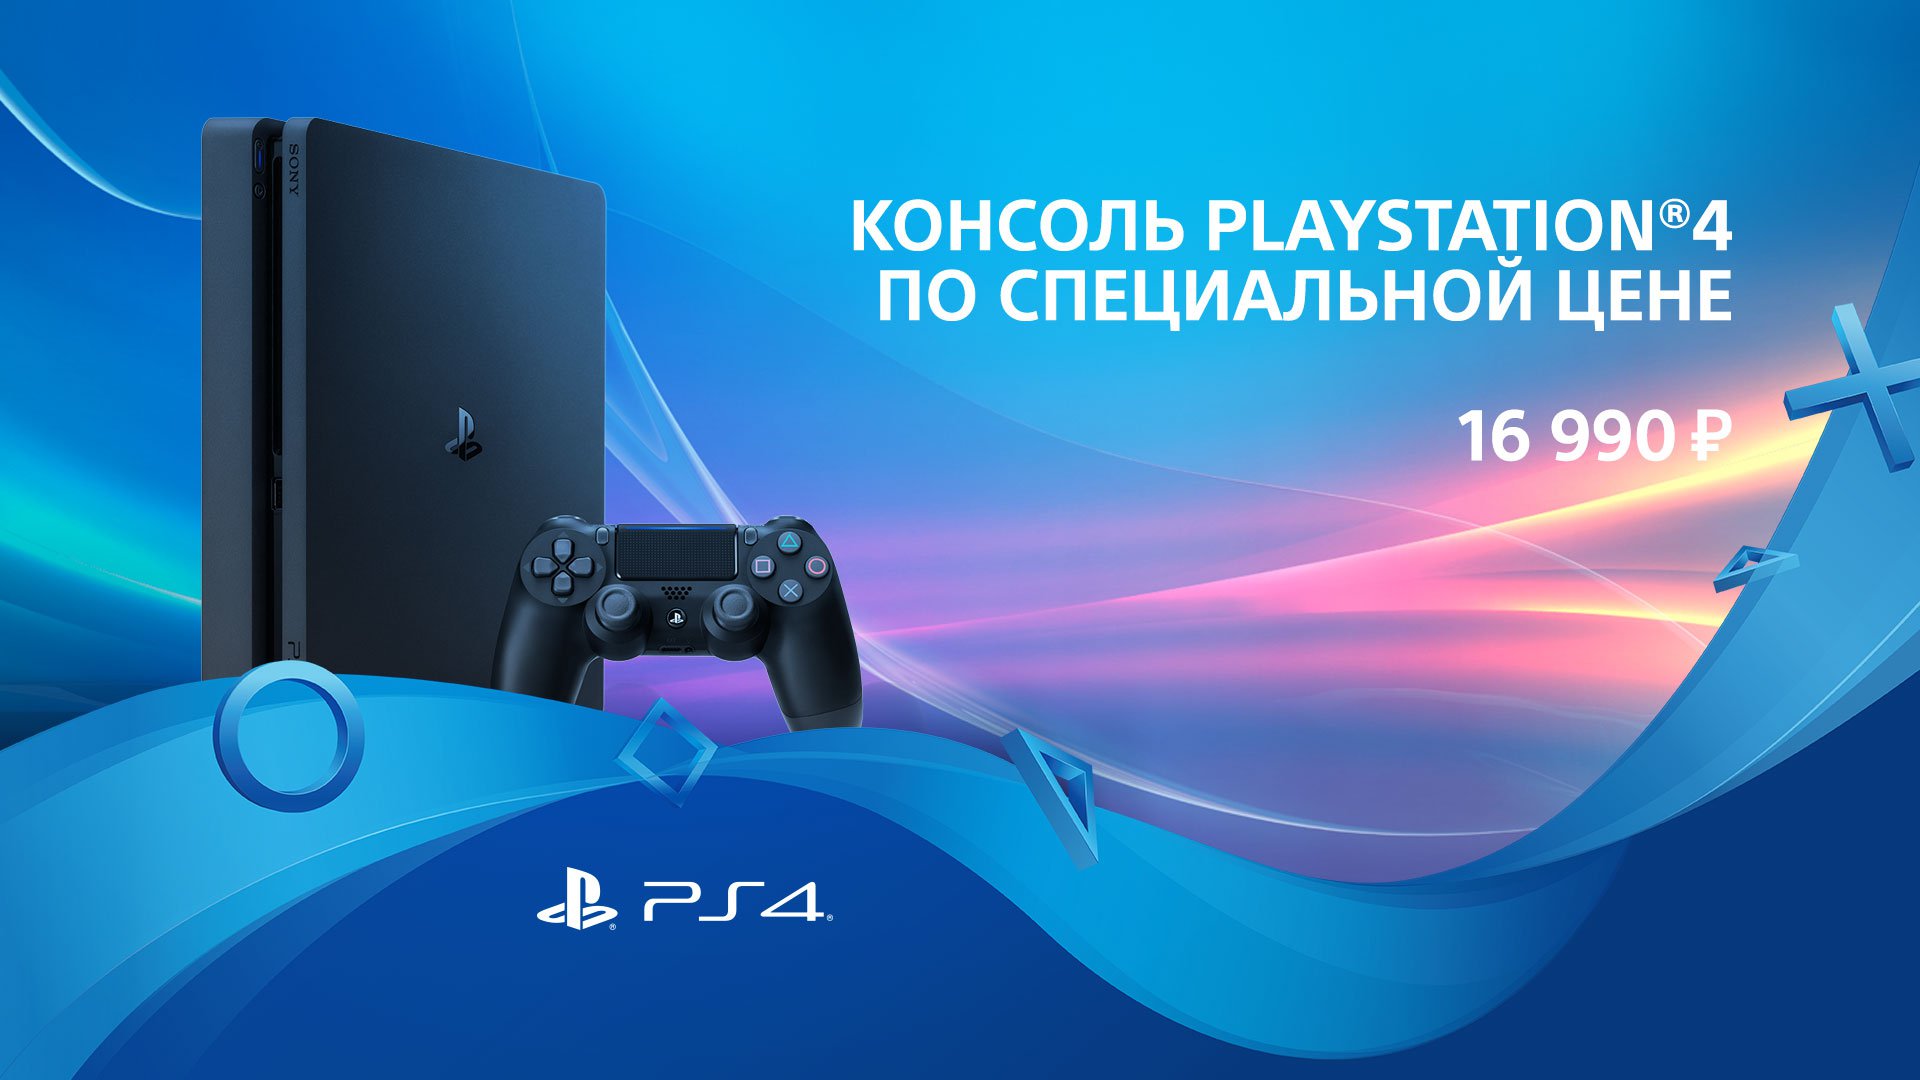 Playstation 4 Slim 500 Gb по специальной цене 16 990 рублей.